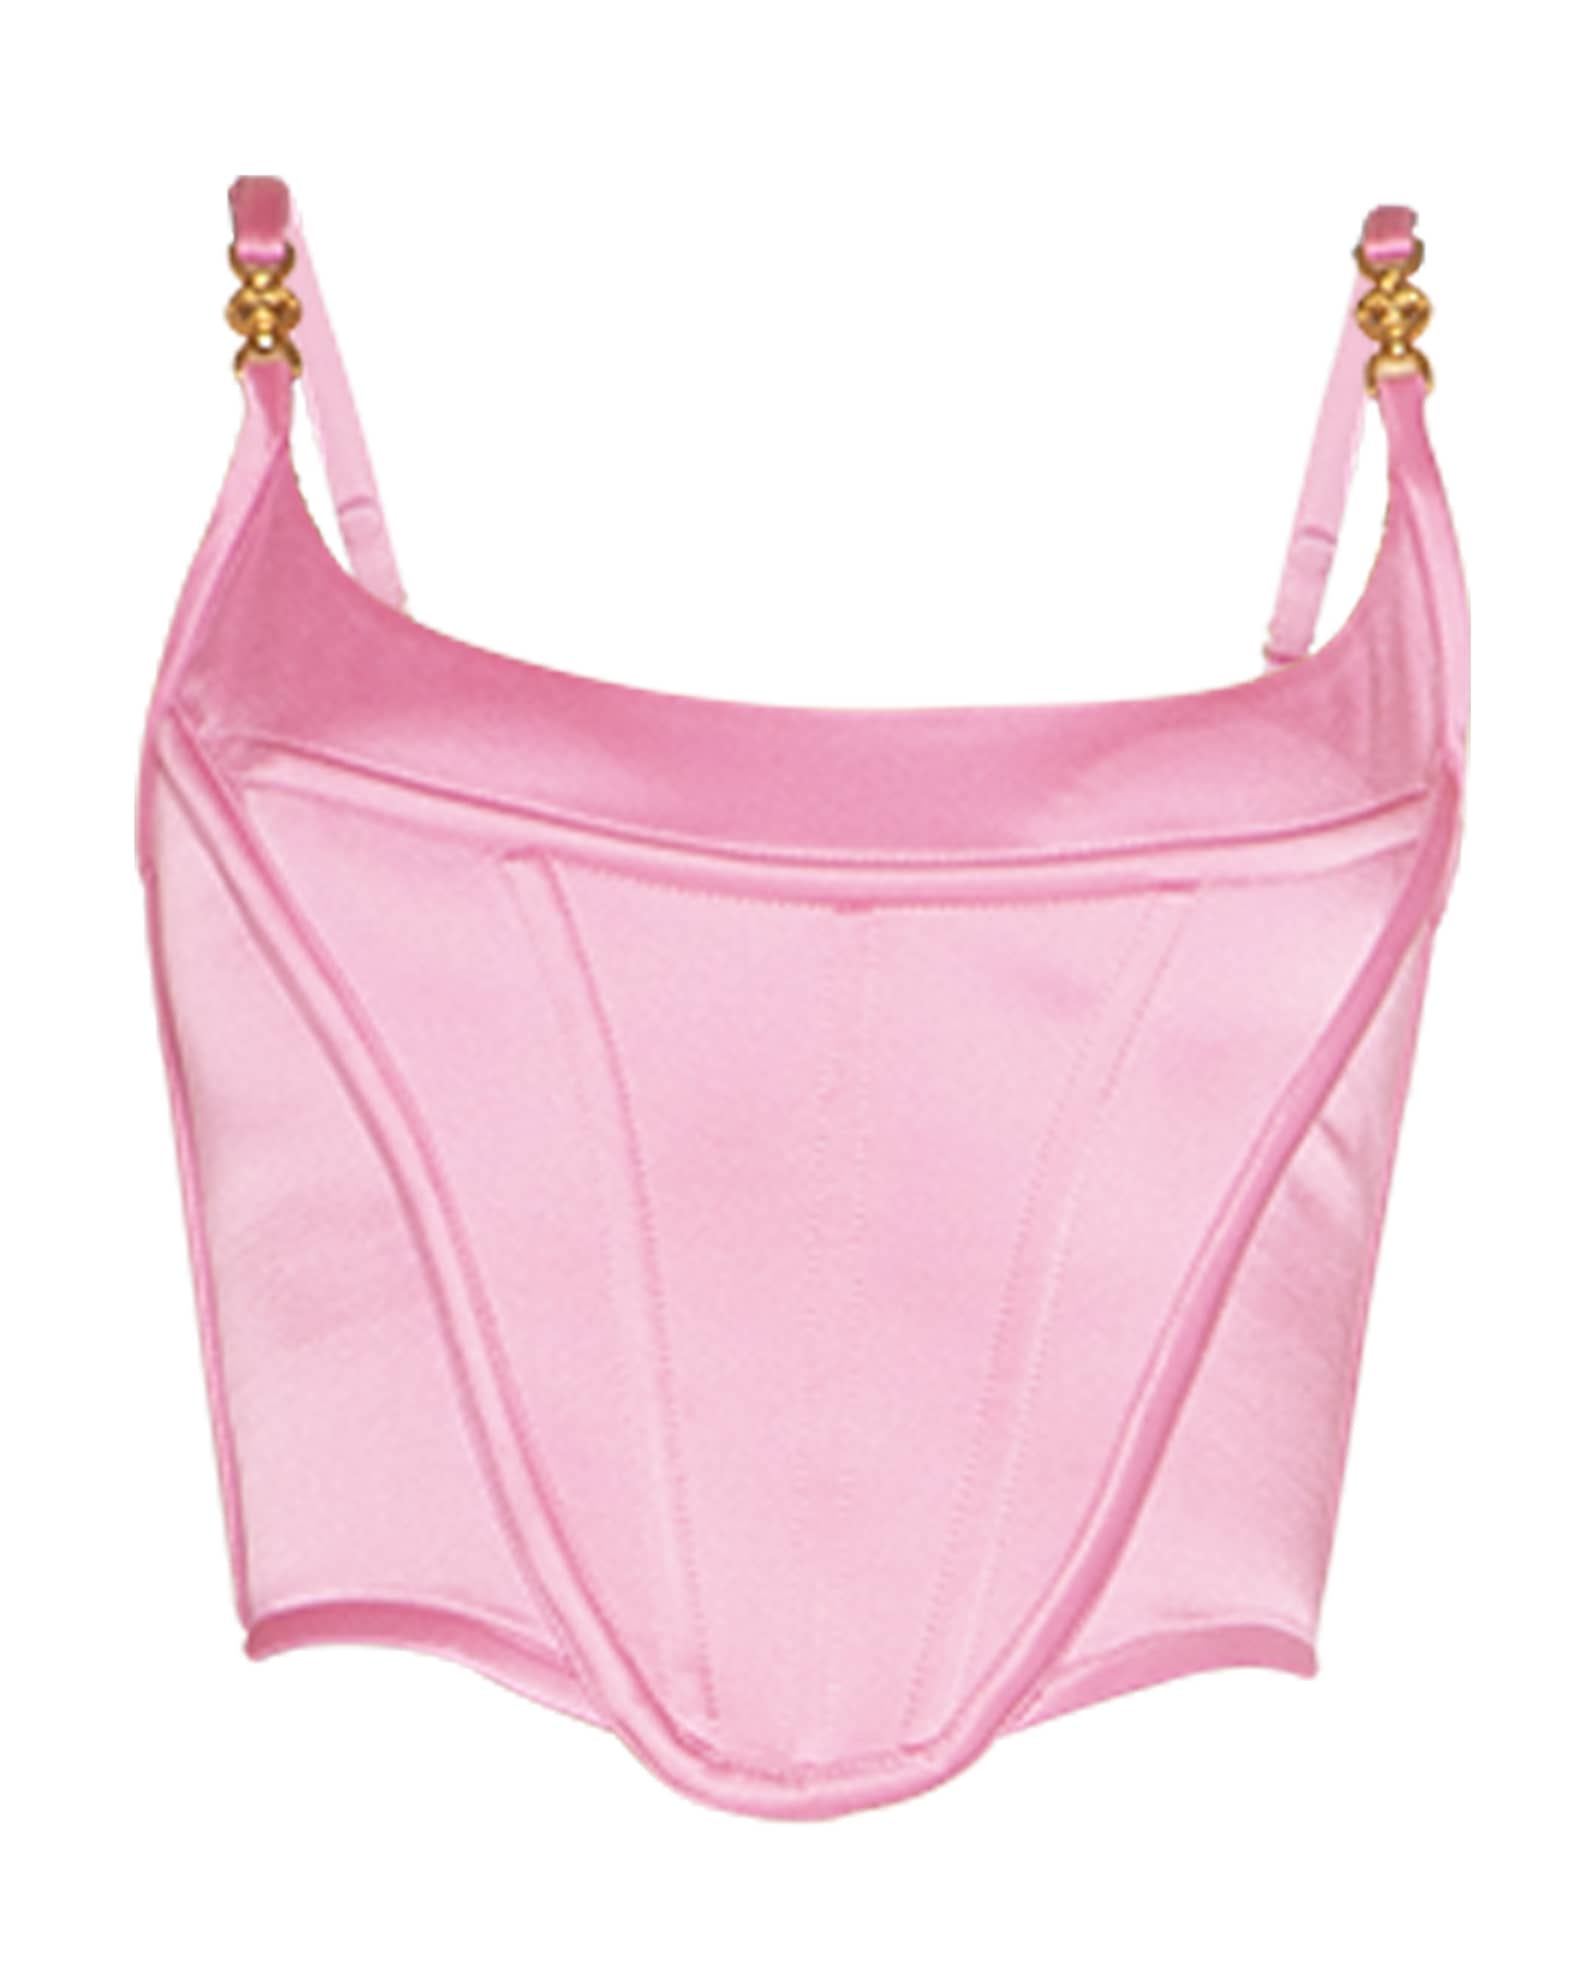 $1425 Versace Women's Pink Solid Medusa top Bra Crop Size 44